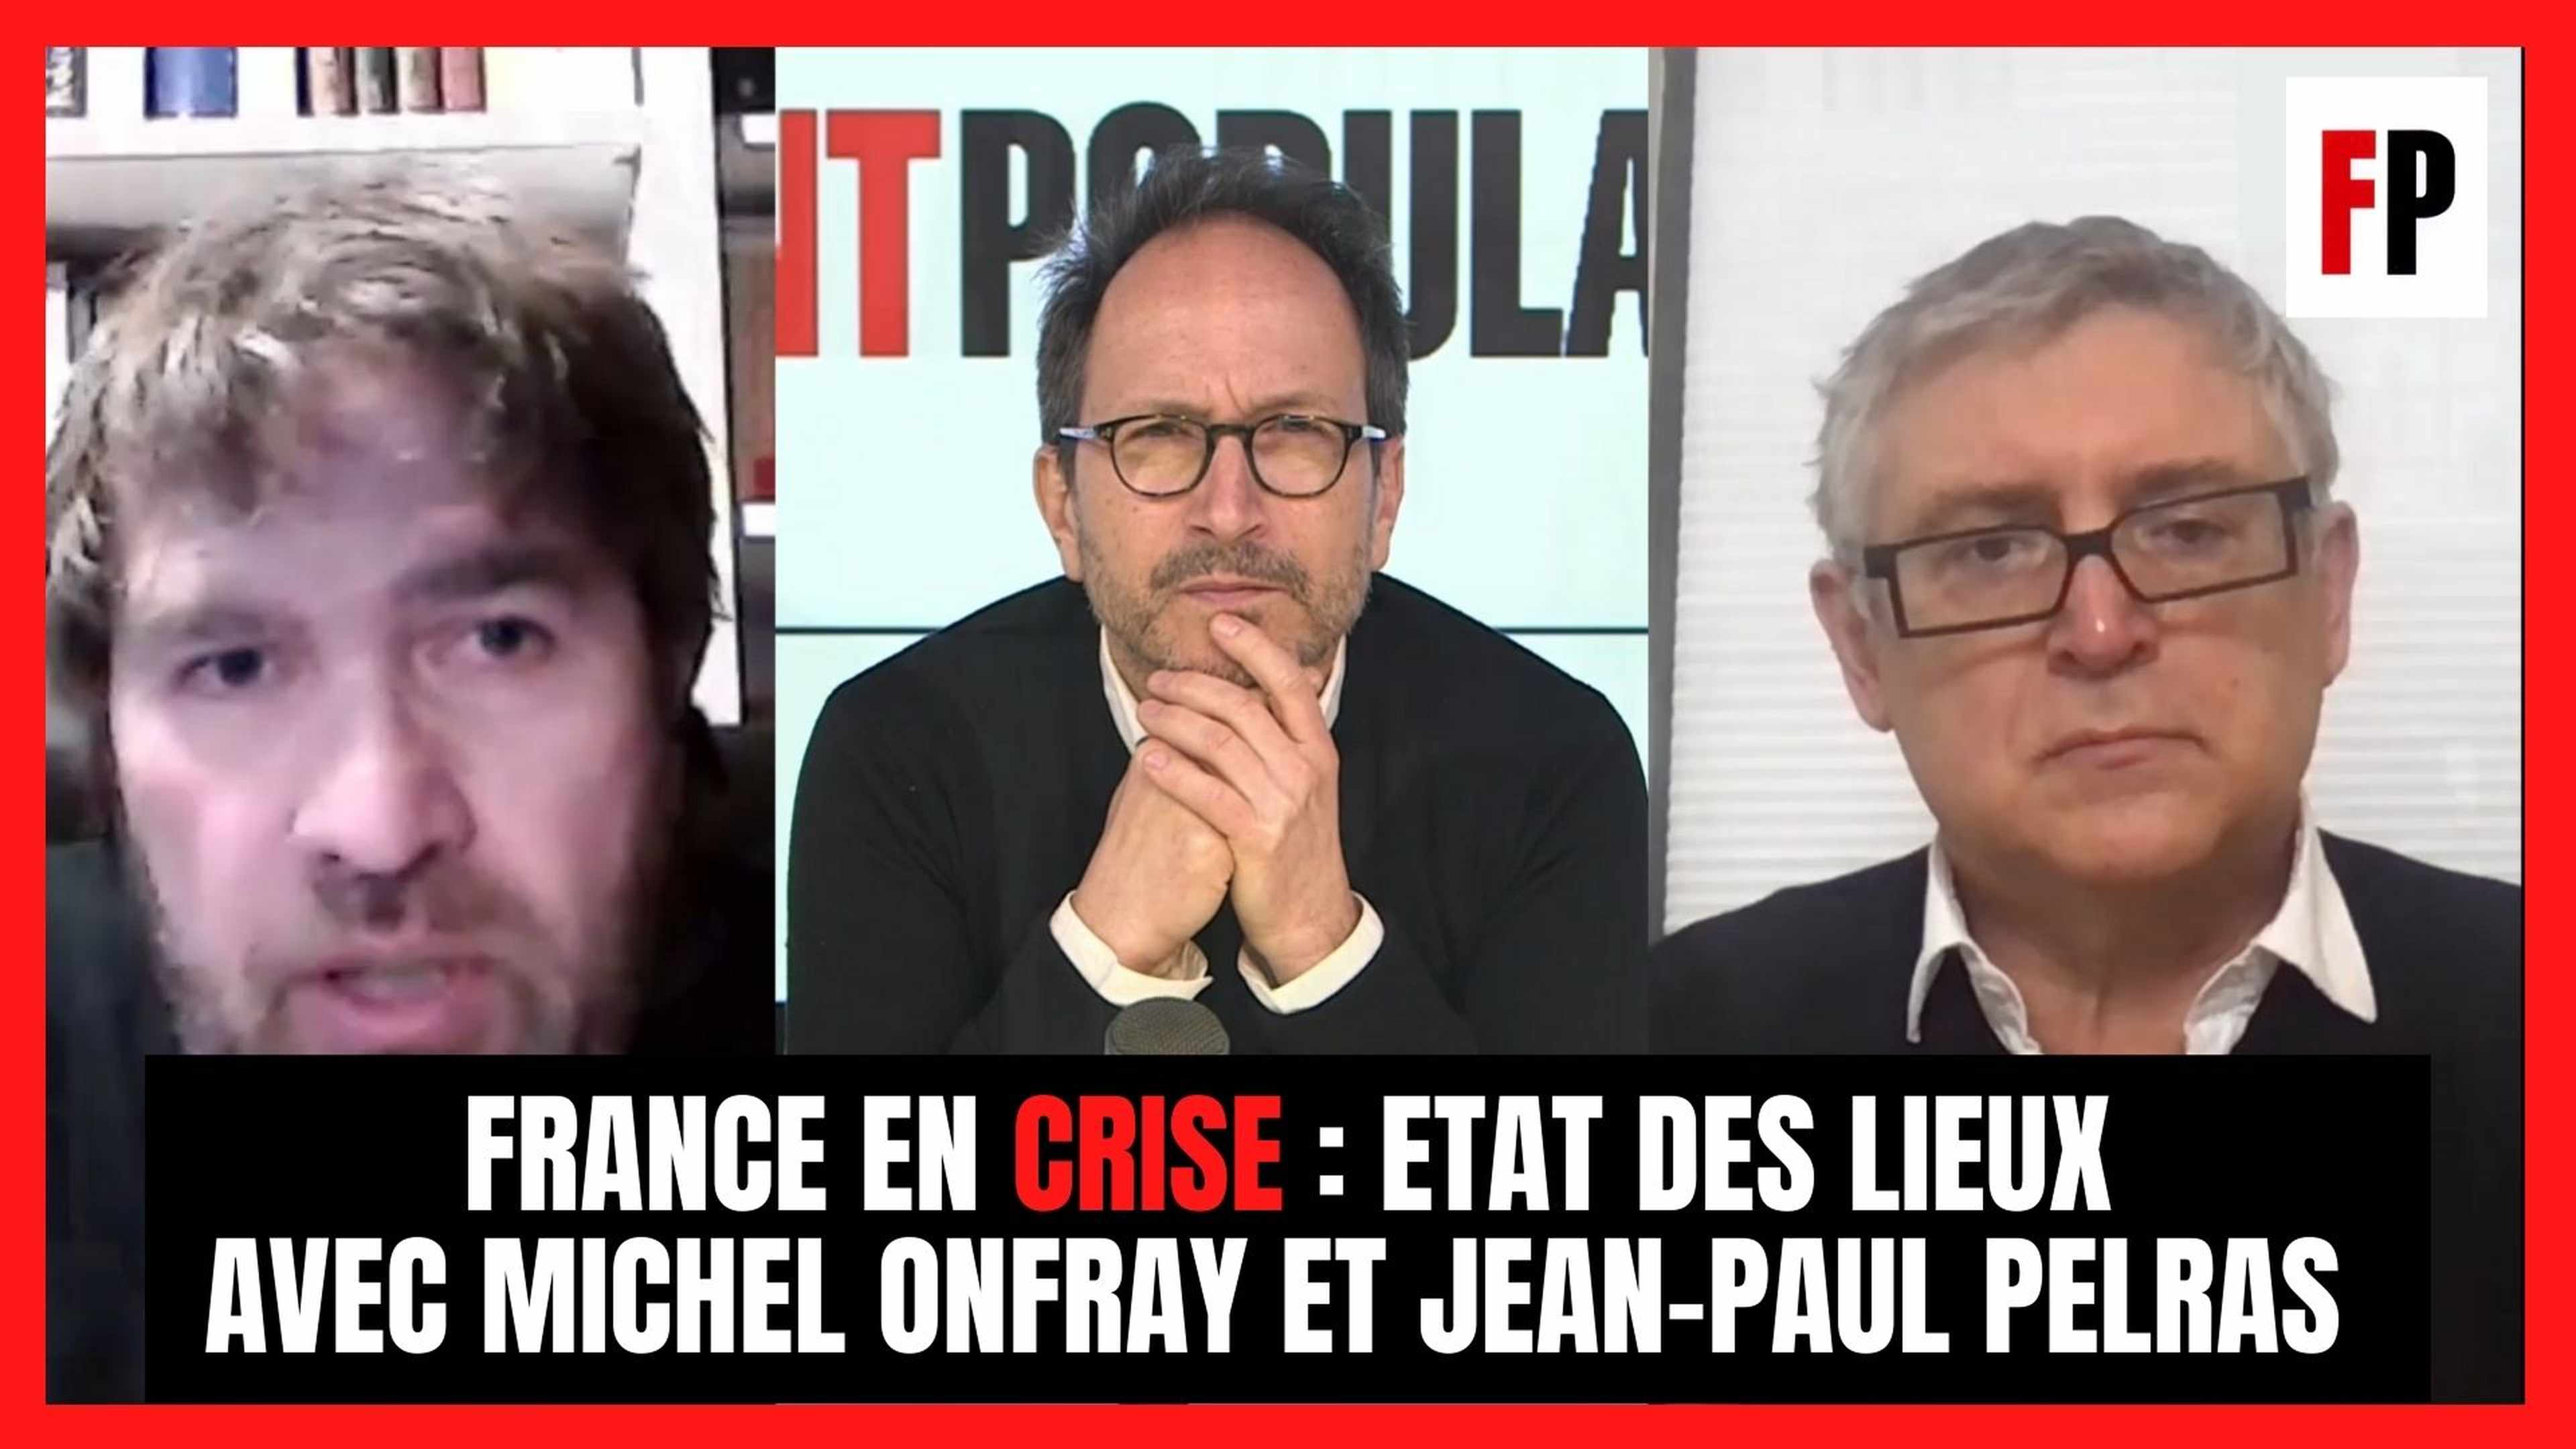 France en crise : état des lieux avec Michel Onfray et Jean-Paul Pelras